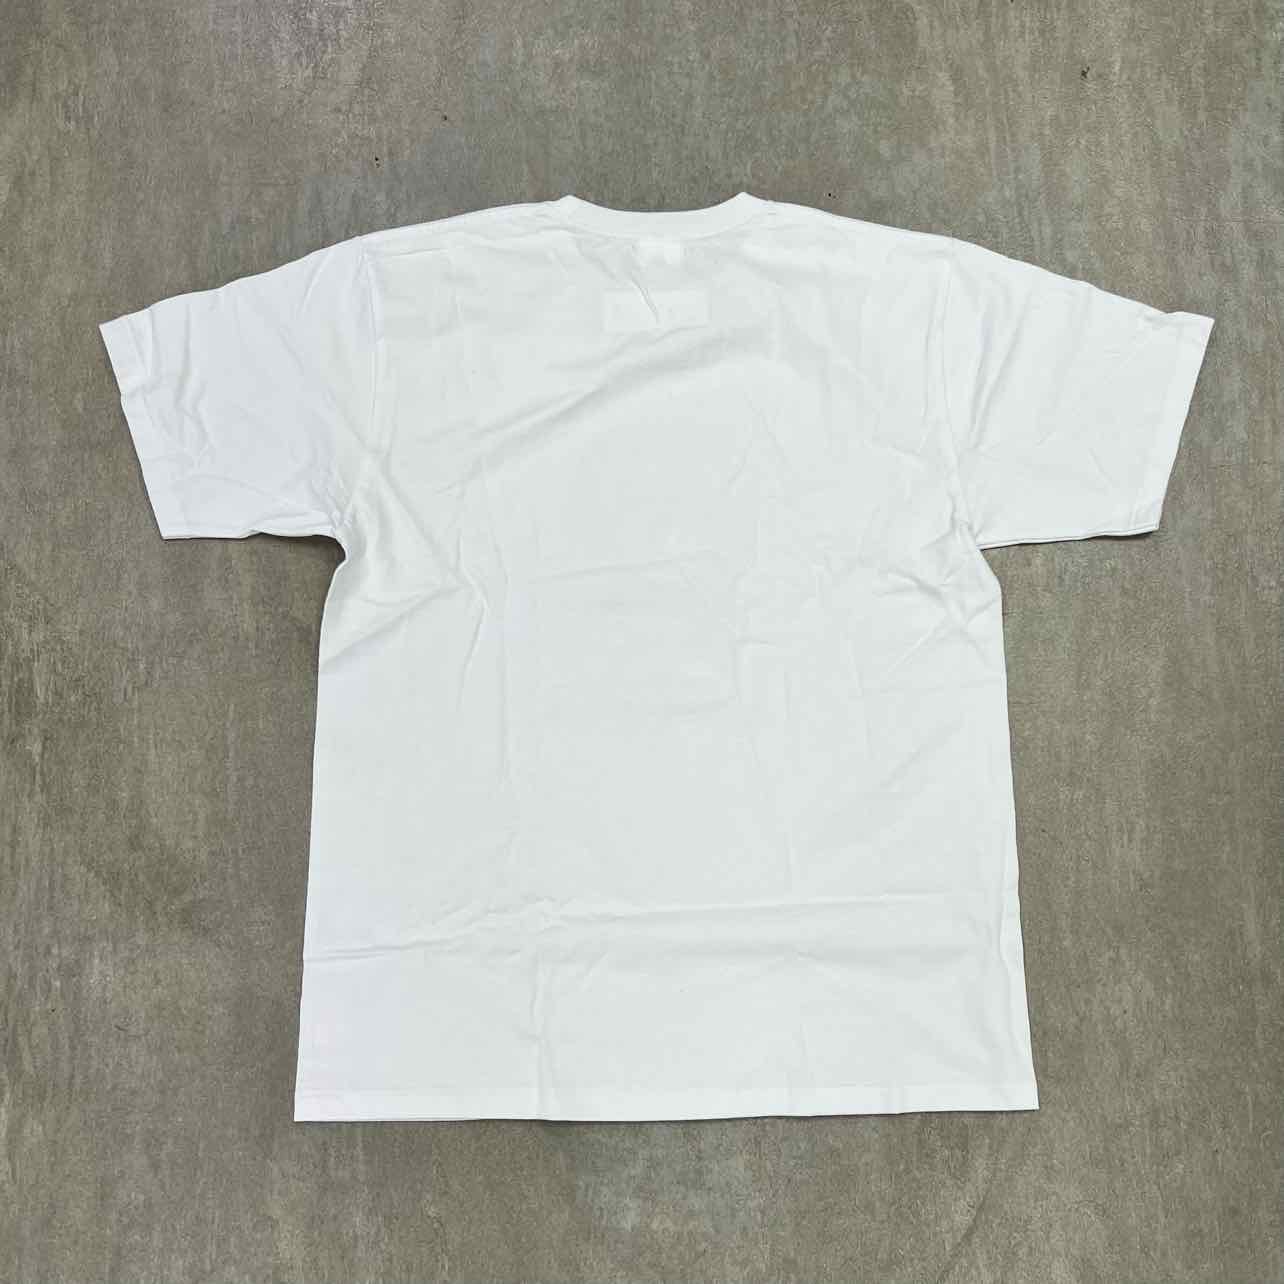 Bape T-Shirt &quot;BABY MILO&quot; White New Size XL